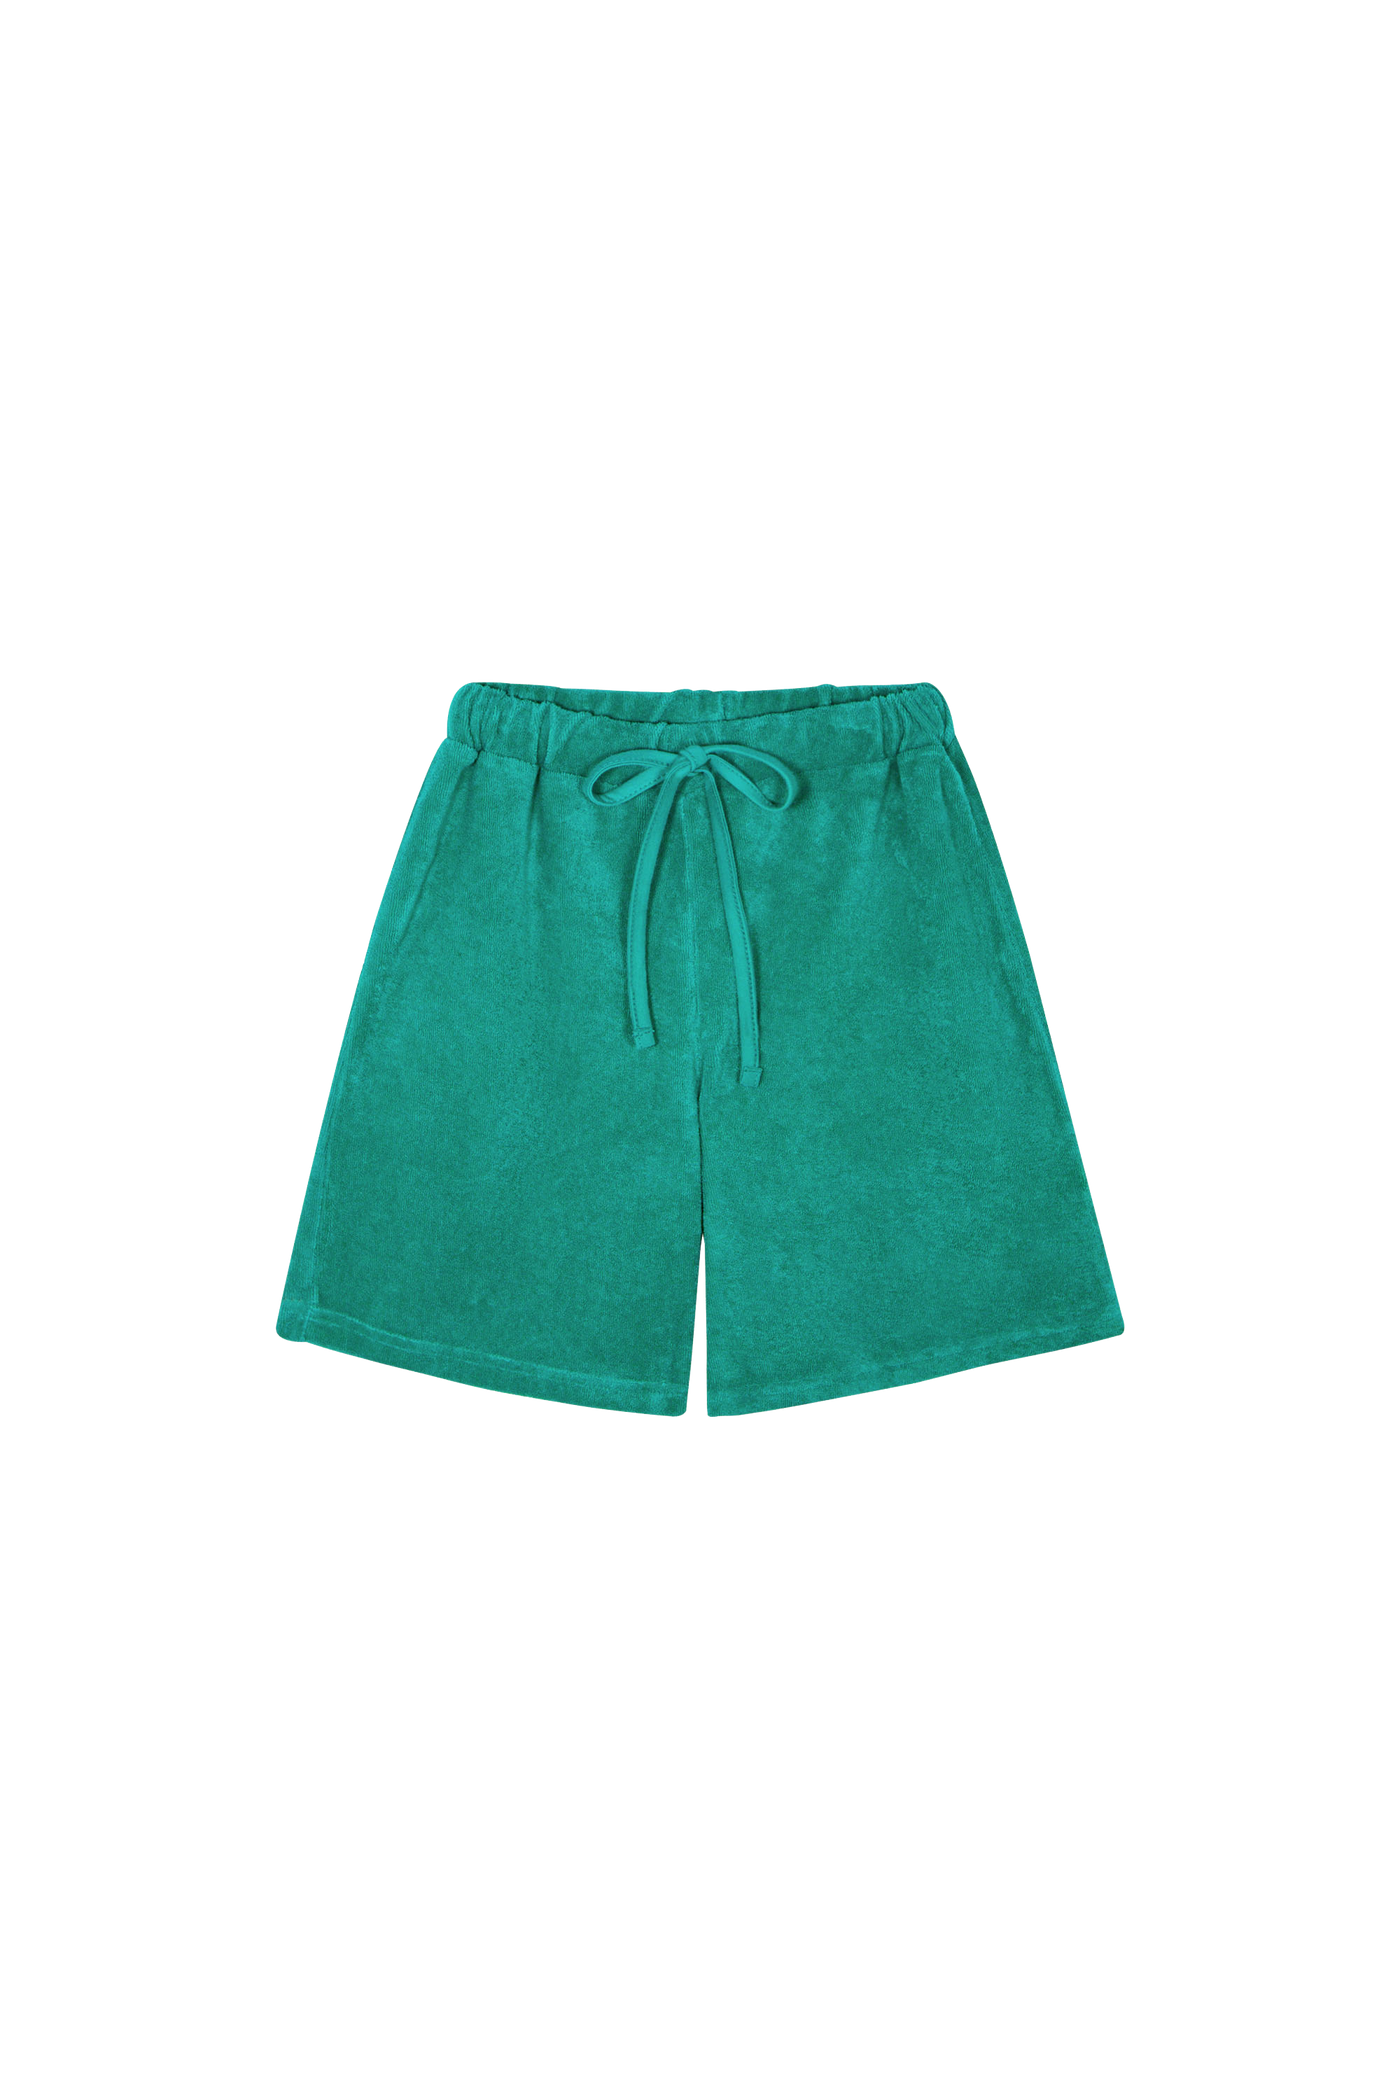 The campamento shorts verdes toalla